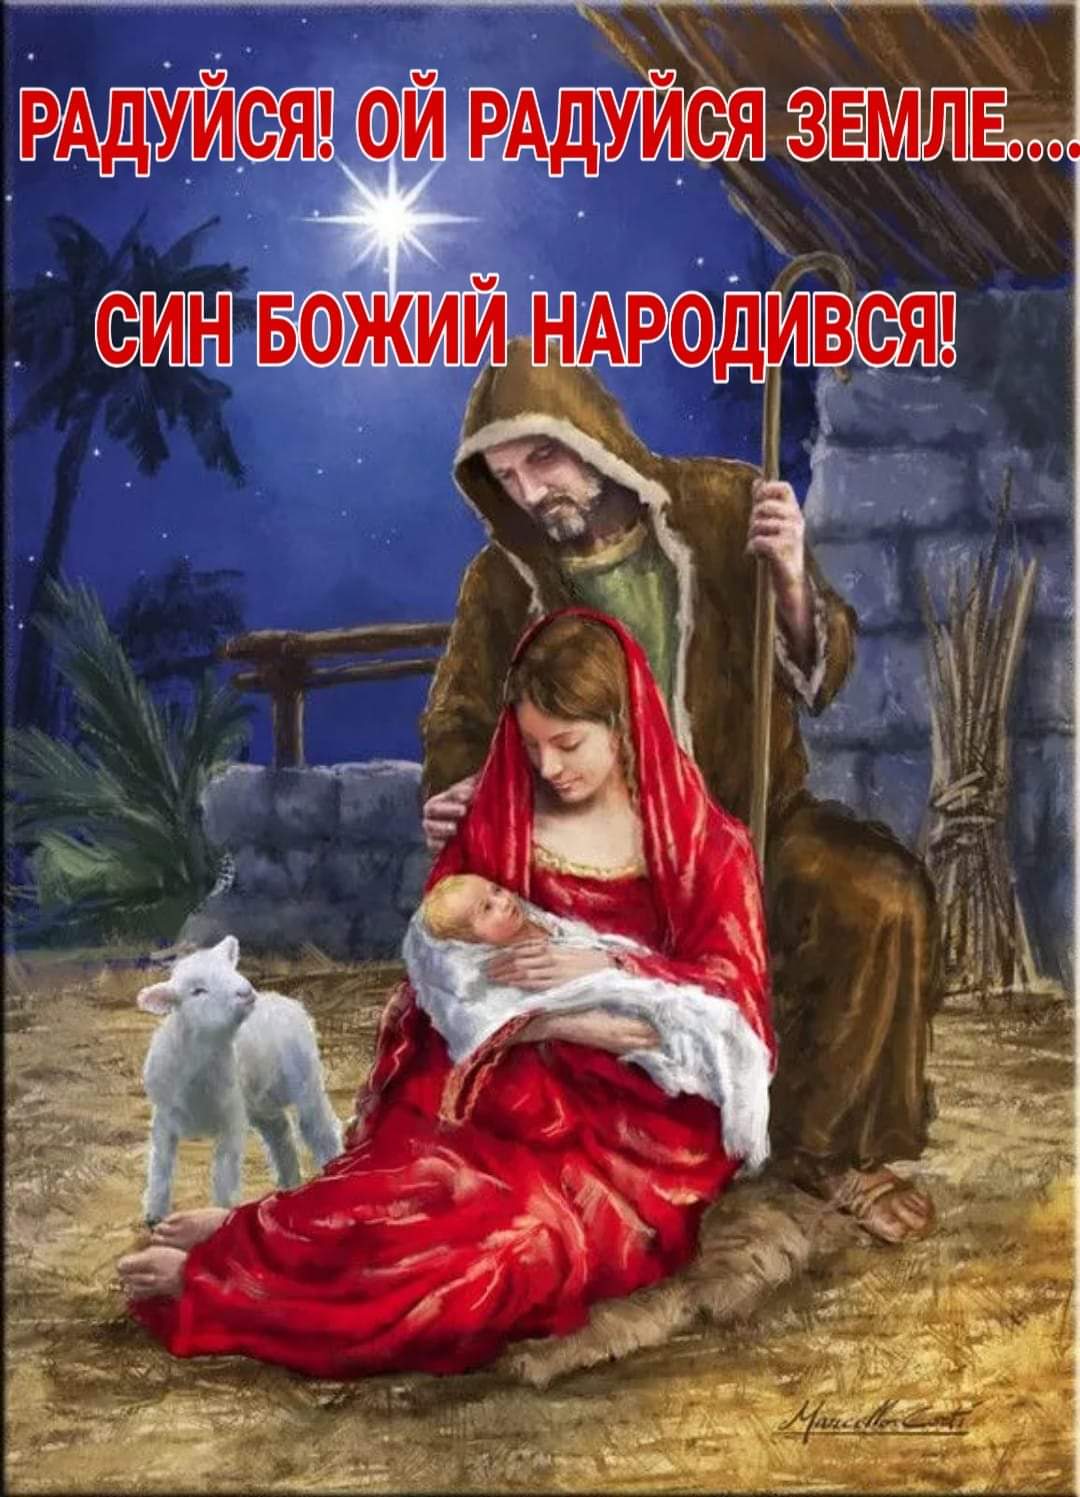 Радуйся, ой радуйся земле... Син Божий народився... - найкращі вітання на Різдво, фото листівки